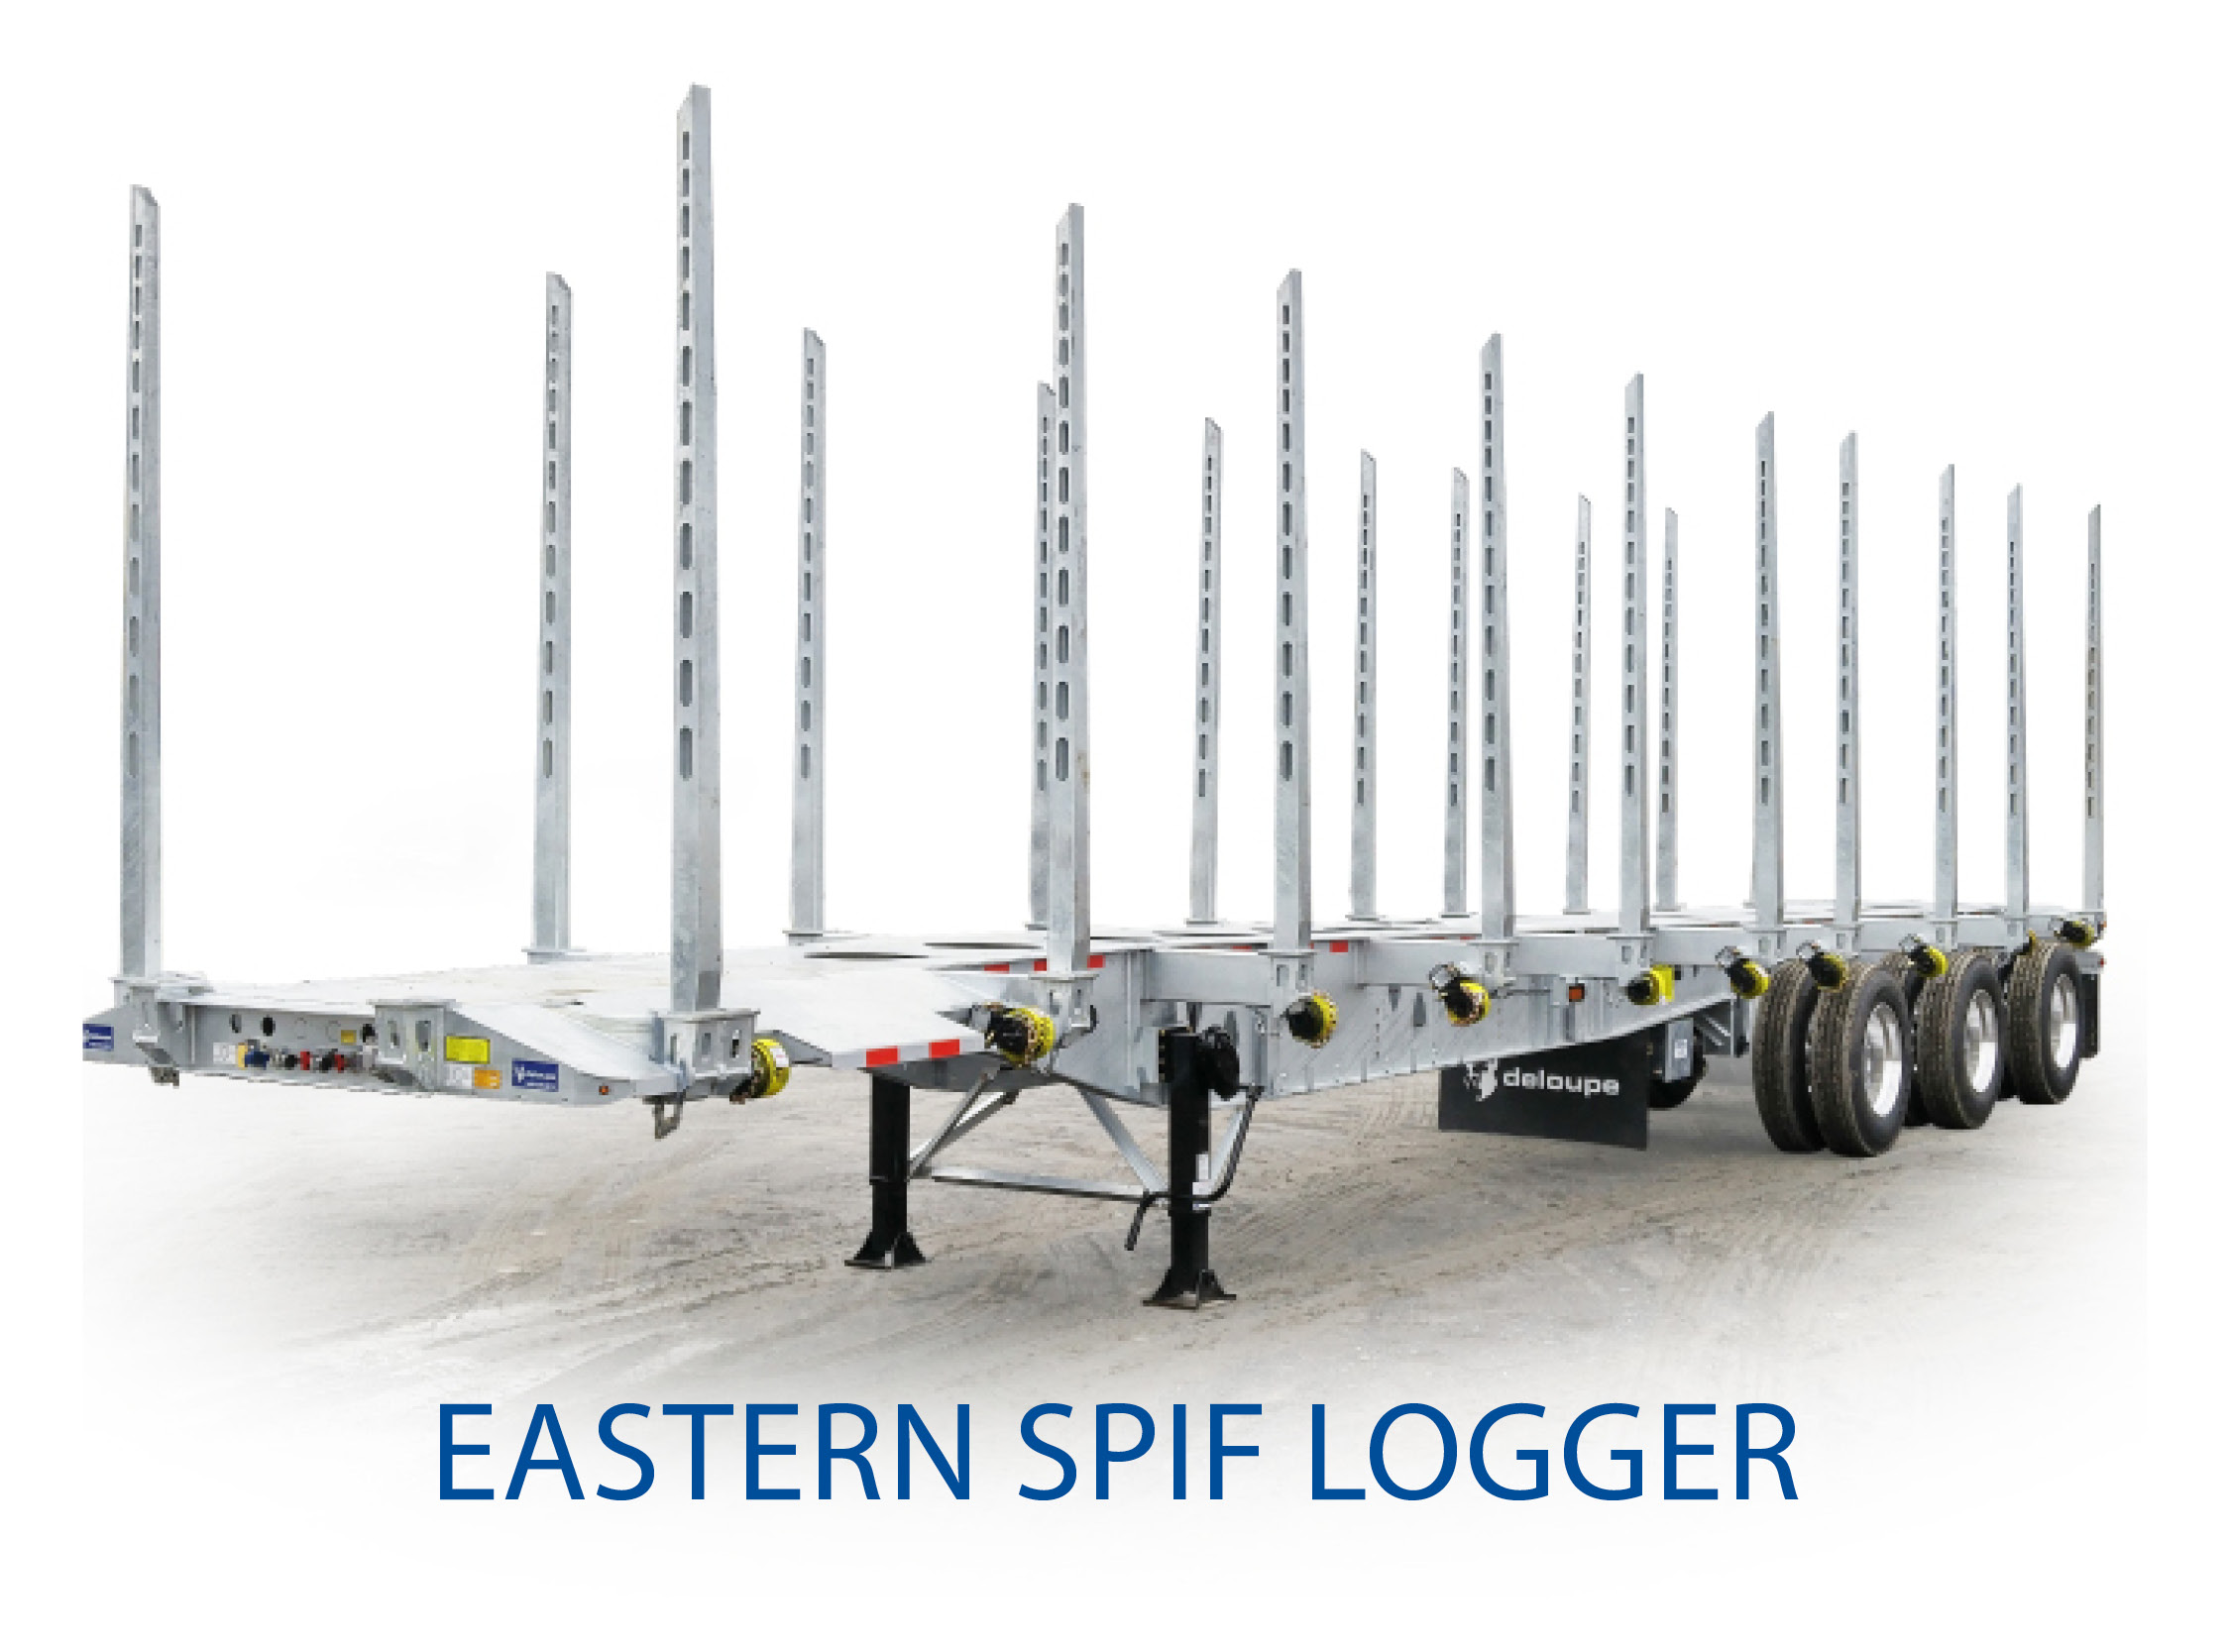 Eastern Spif Logger